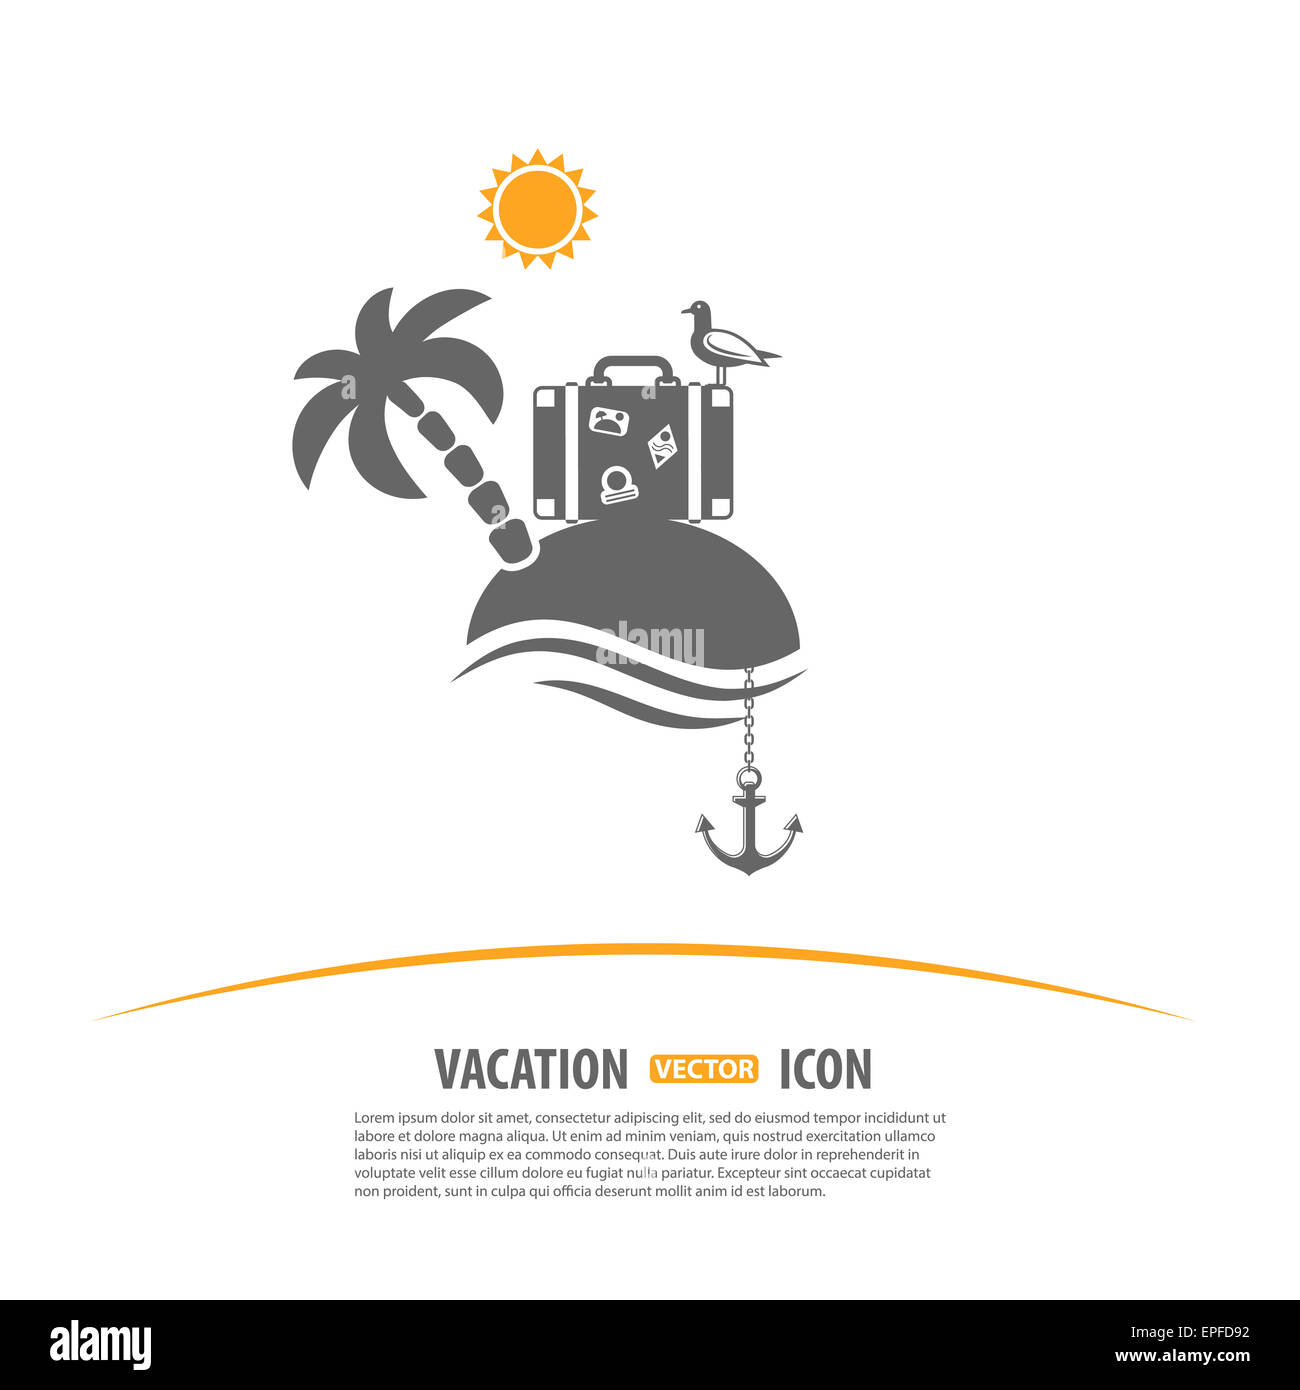 Reisen, Tourismus und Ferien-Logo-Design-Vorlage. Insel mit Palmen, Sonne, Koffer, Möwe und Anker-Ikonen Stockfoto